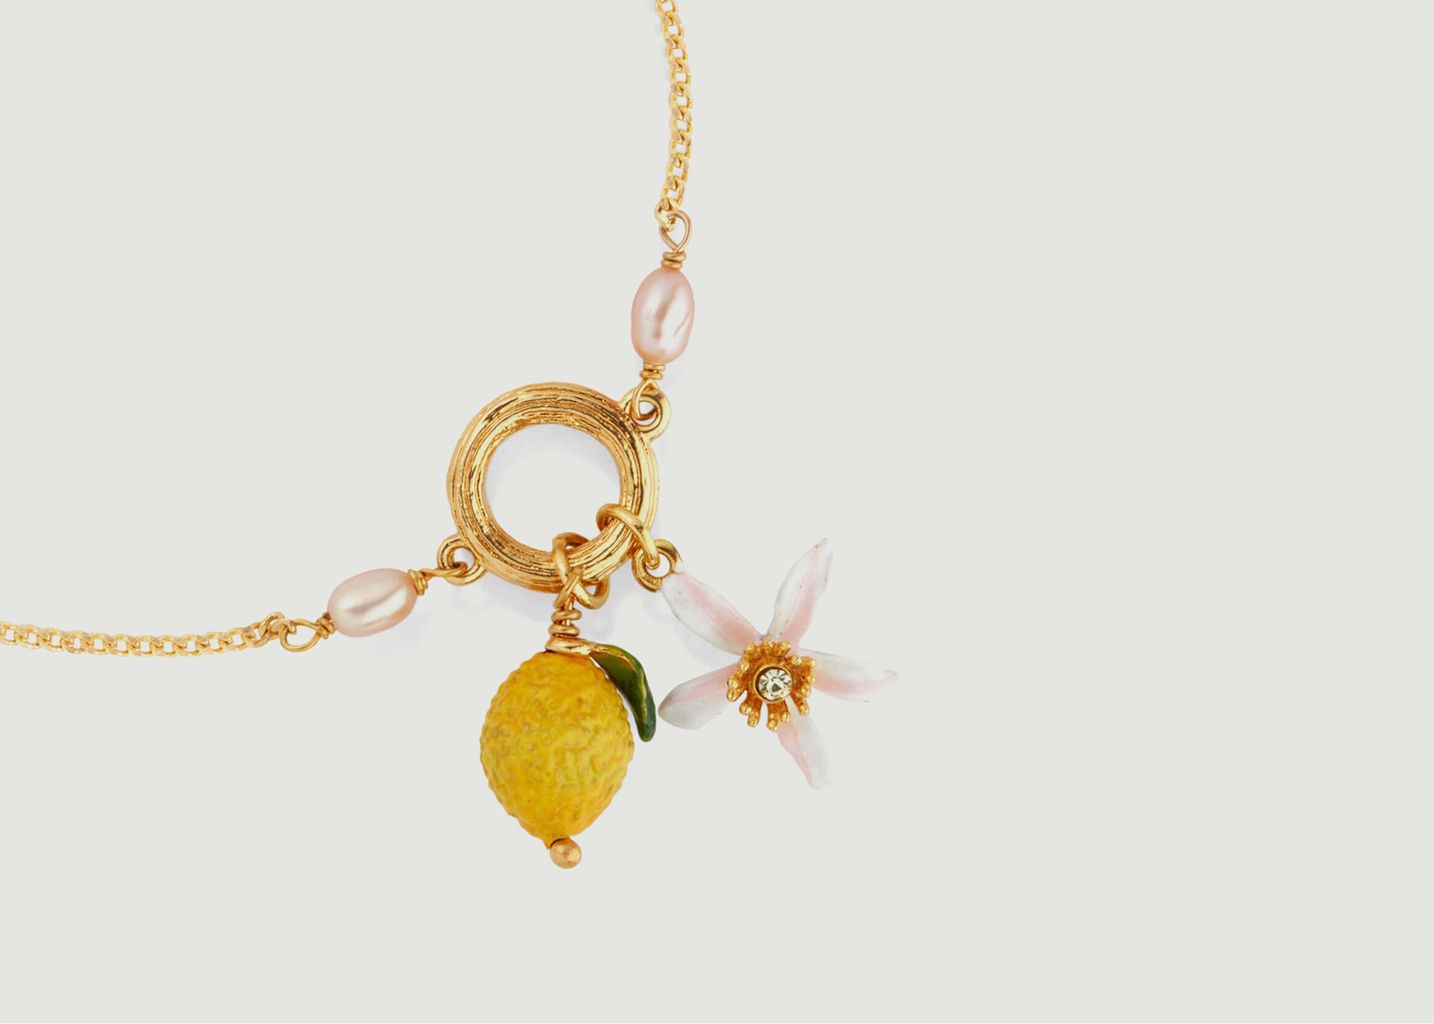 Lemon and lemon flower bracelet - Les Néréides